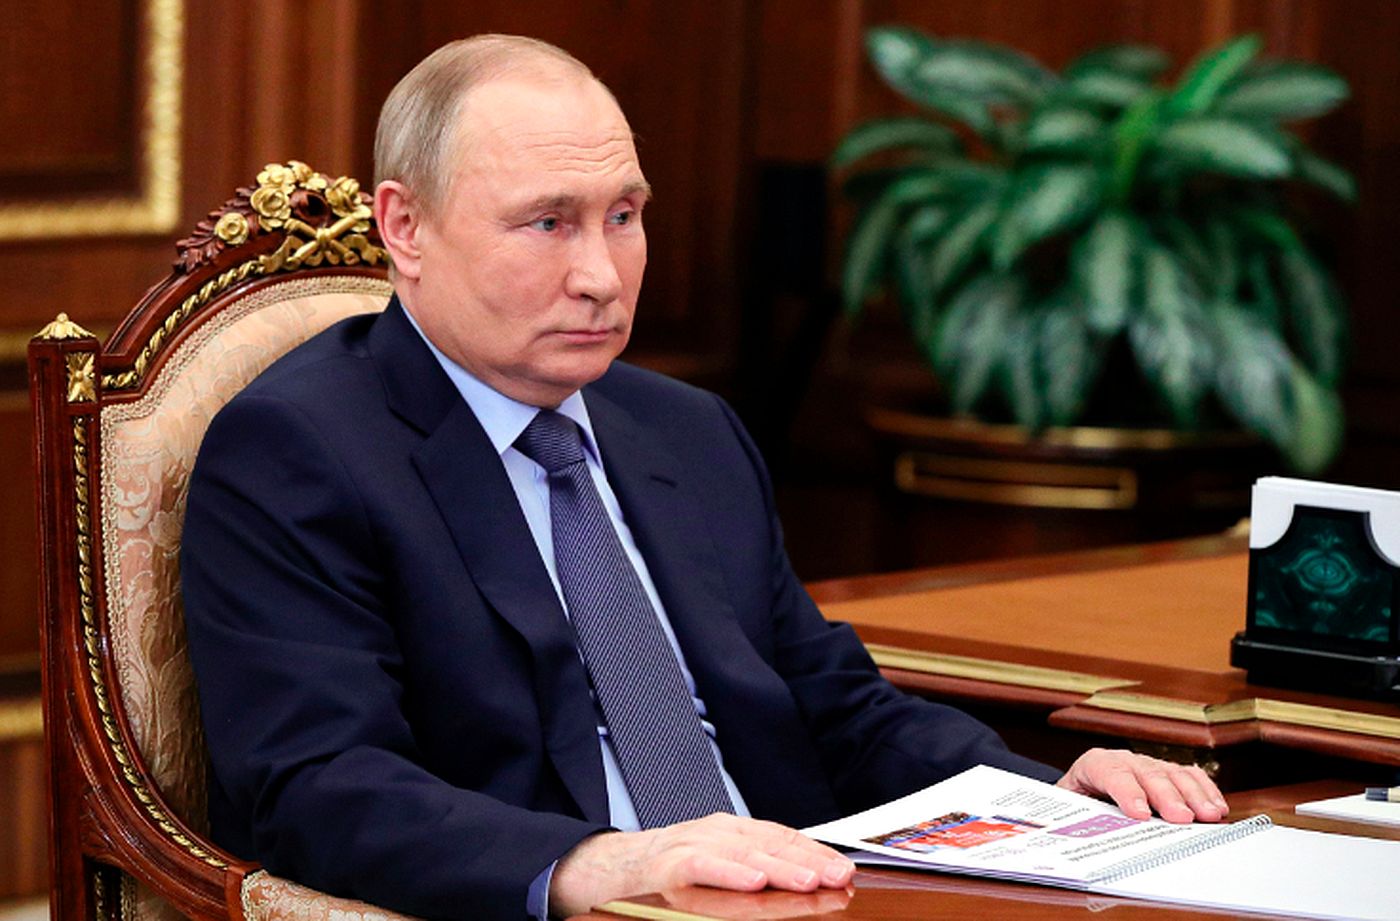 Răzbunarea lui Putin. Liderul de la Kremlin nu uită și nu iartă